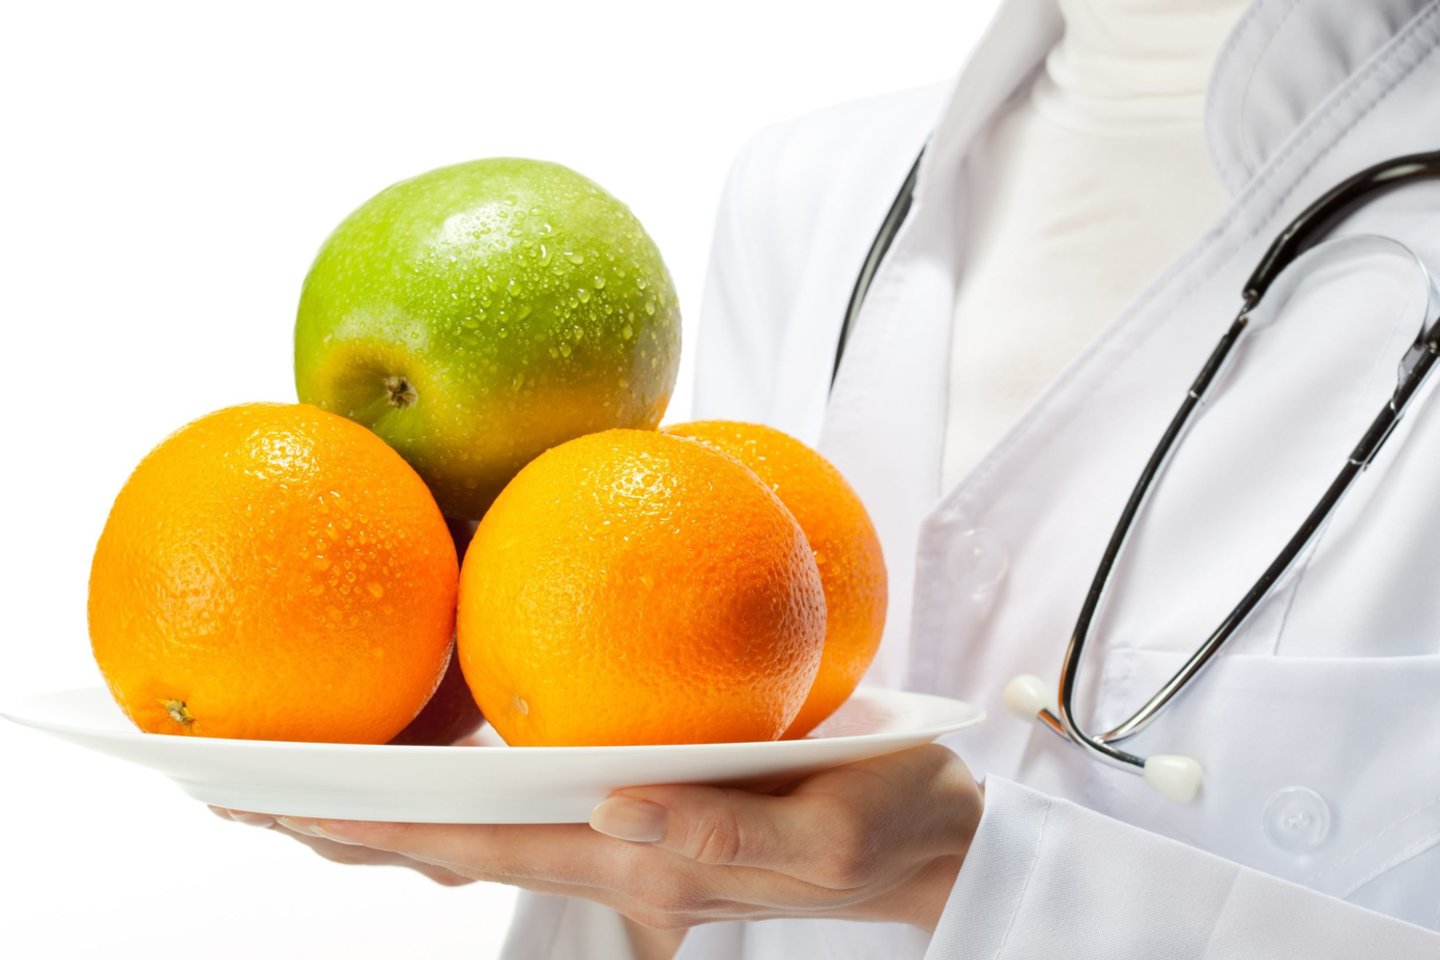 Viename apelsine yra vienos dienos vitamino C dozė.<br> 123rf nuotr.